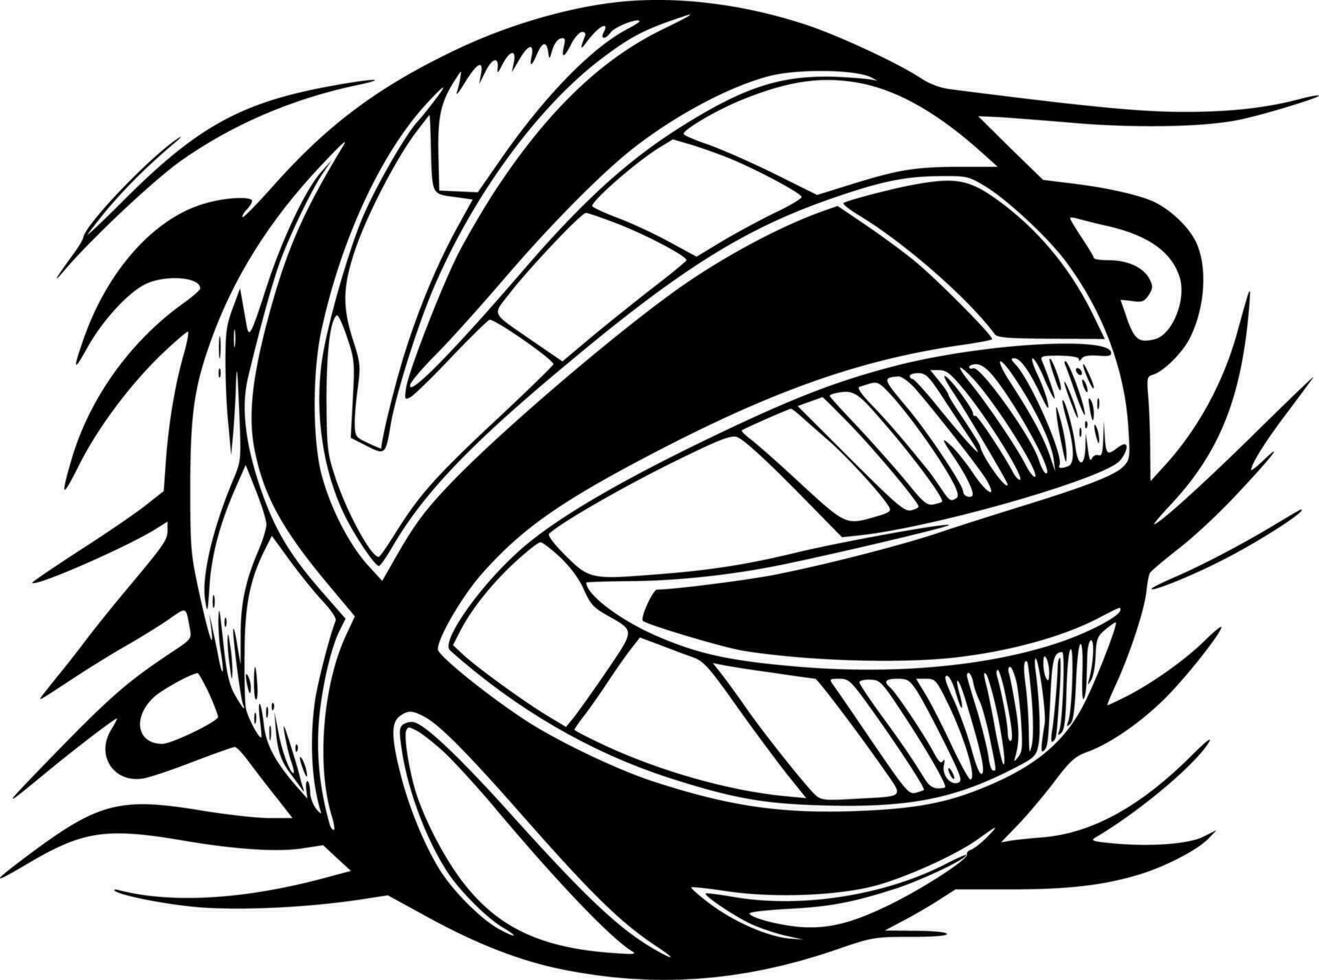 volleybal - hoog kwaliteit vector logo - vector illustratie ideaal voor t-shirt grafisch